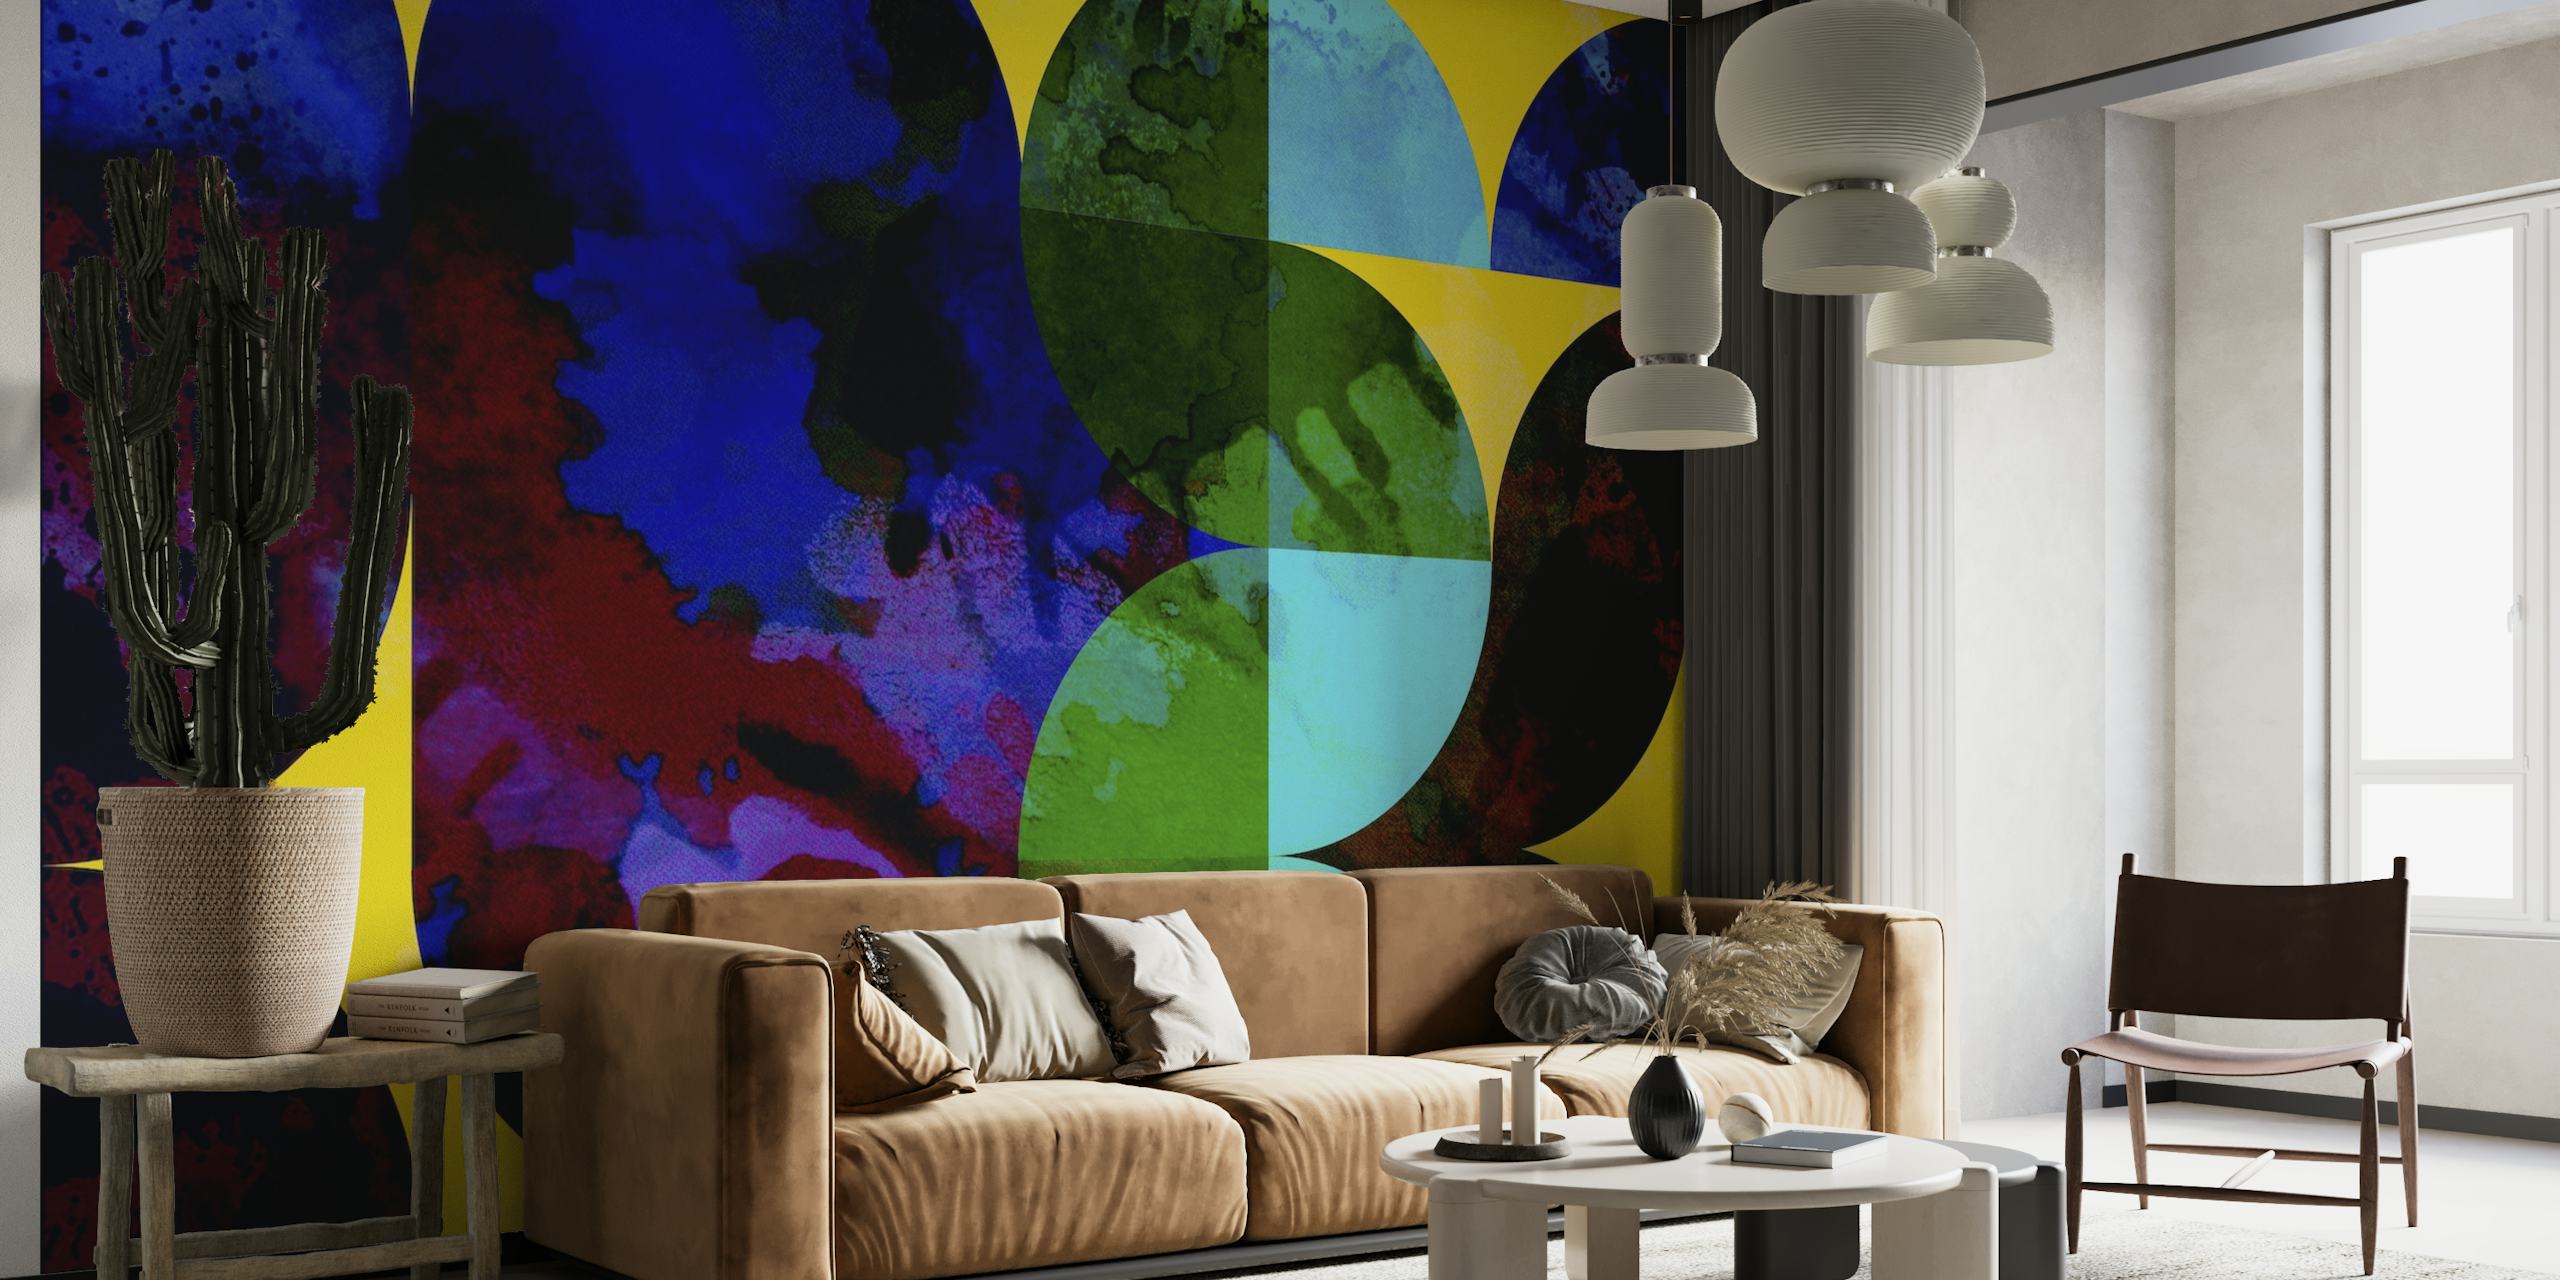 Abstrakt moderne vægmaleri i farvet glasmosaik fra midten af århundredet i levende farver